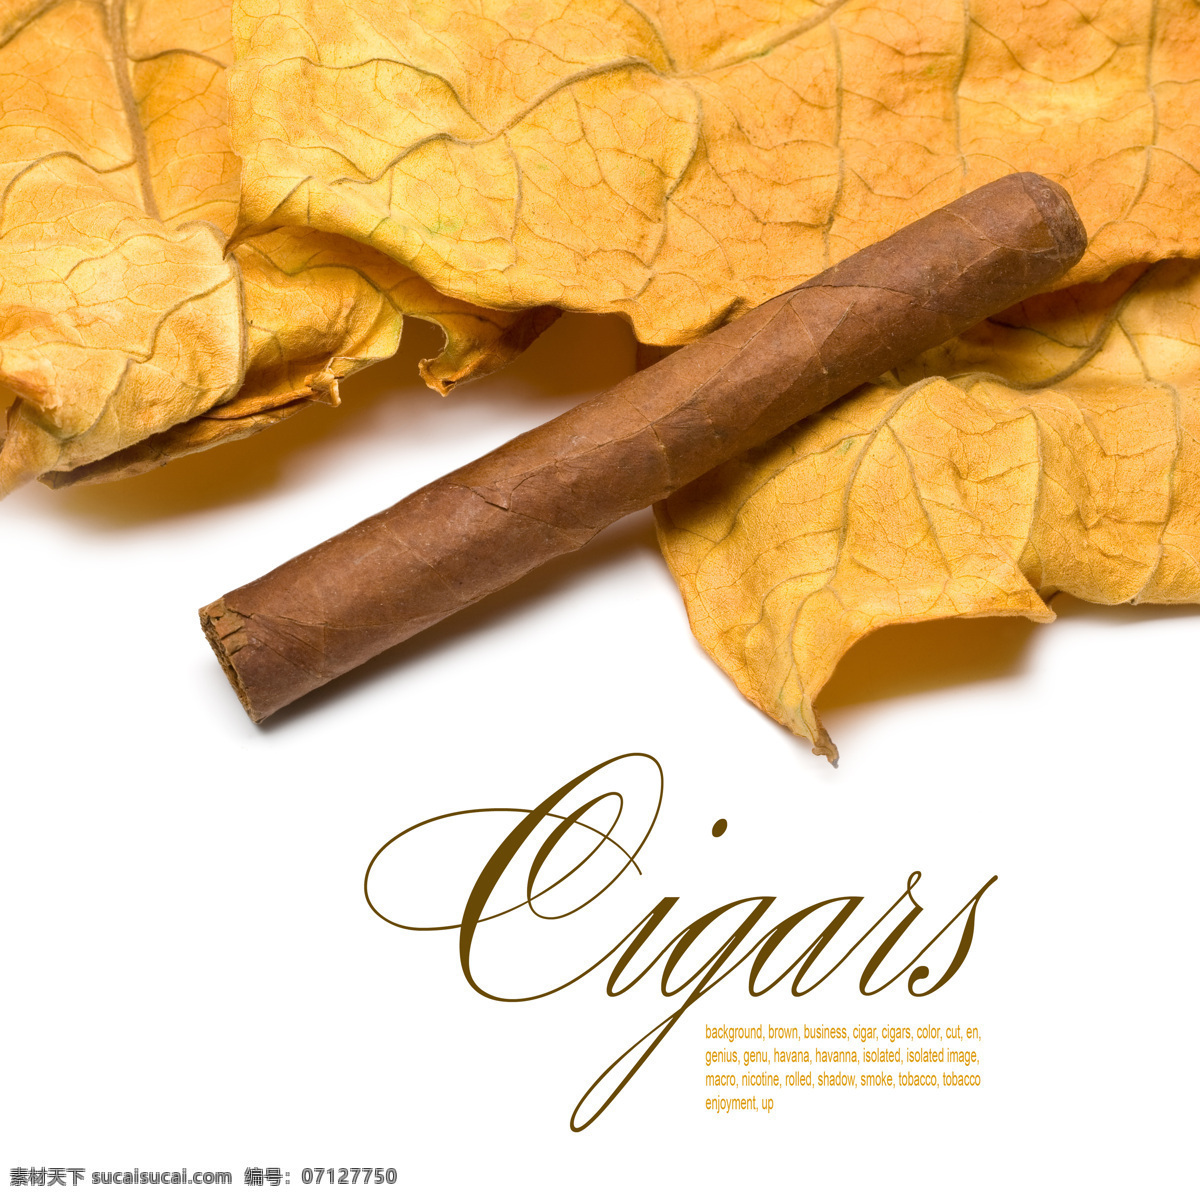 古巴雪茄广告 古巴雪茄 雪茄 香烟 烟草 名贵雪茄 名贵烟草 卷烟 奢侈生活